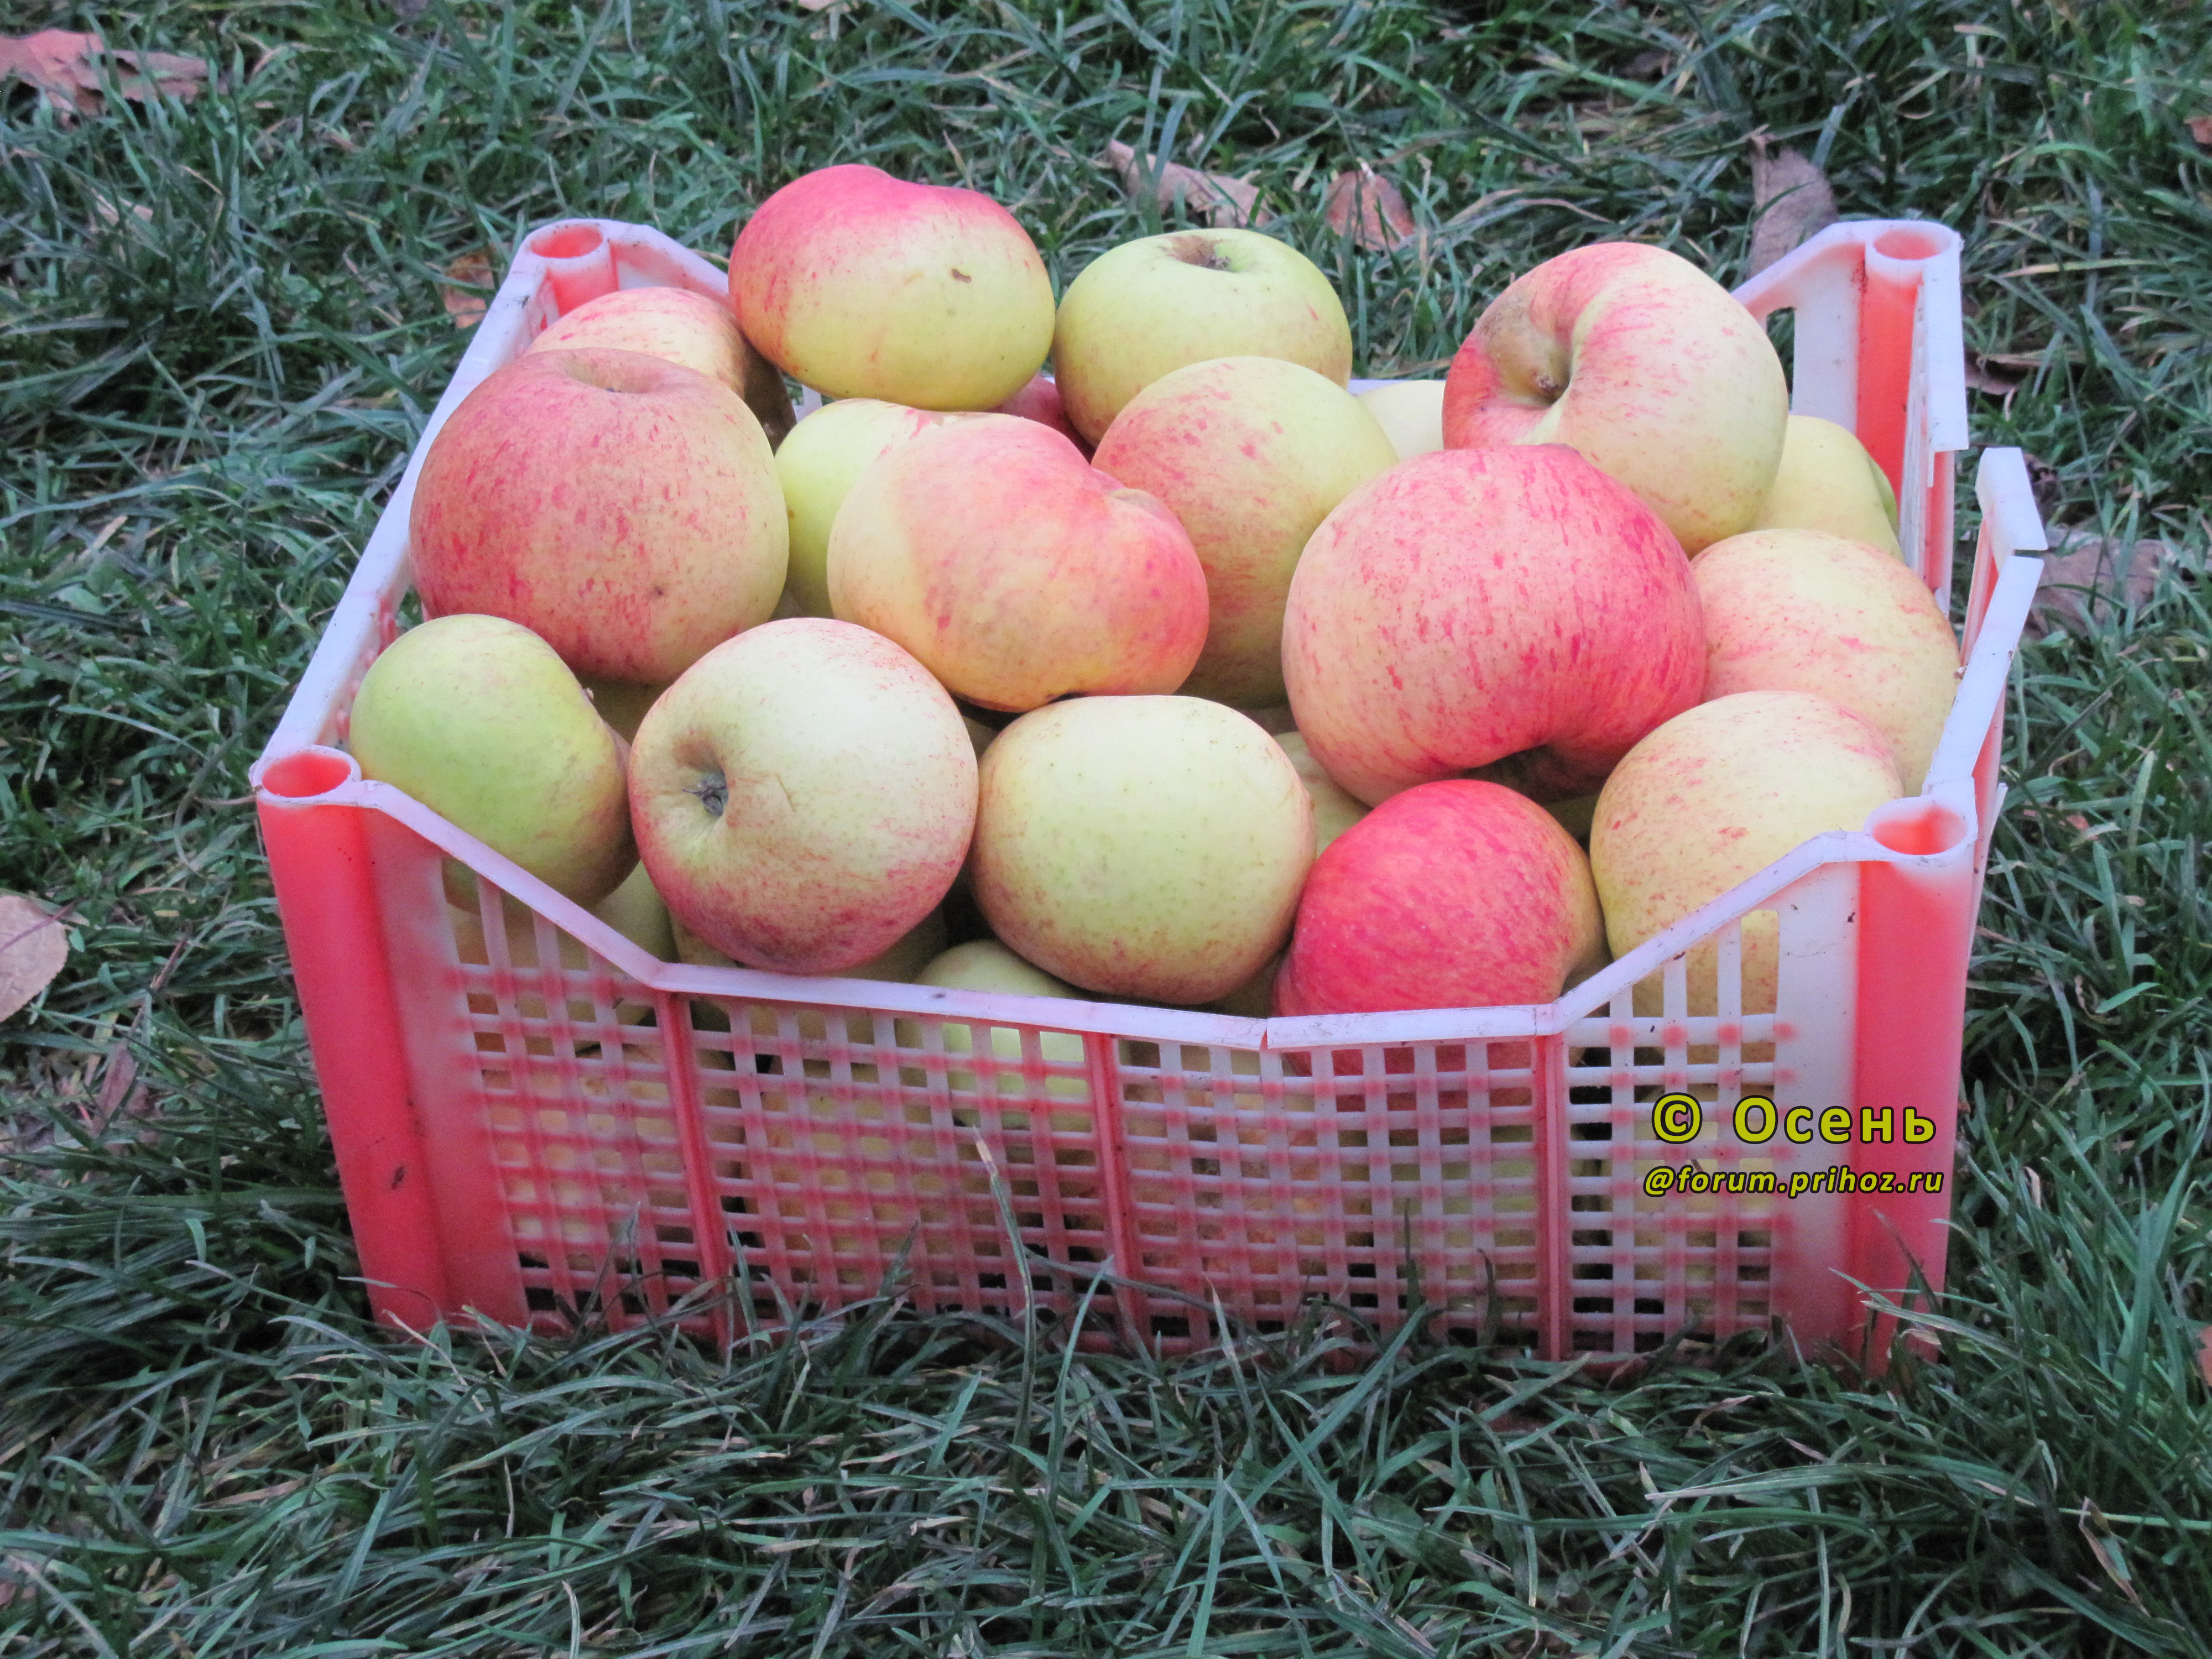 Яблоня Шаропай - описание сорта и фото яблок